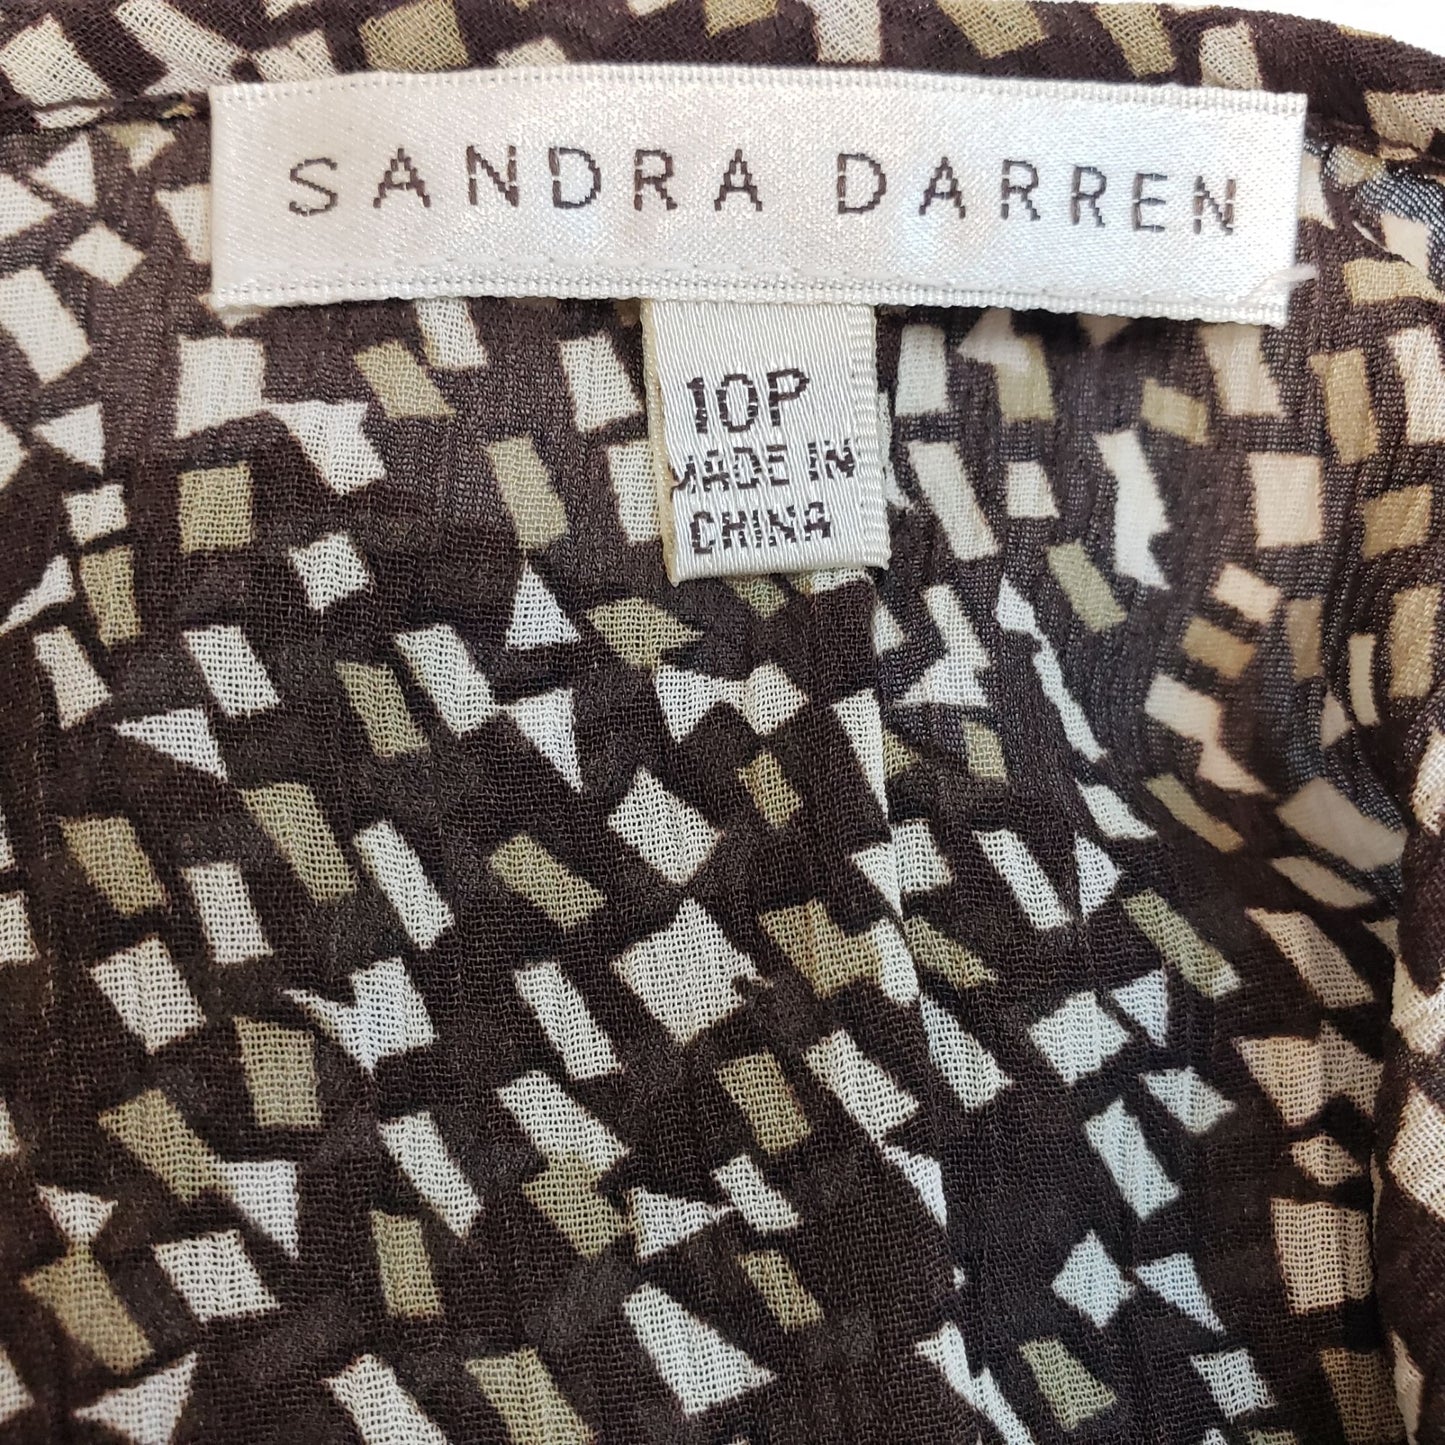 Sandra Darren Mosaic Print Fit & Flare Dress Size 10 Petite